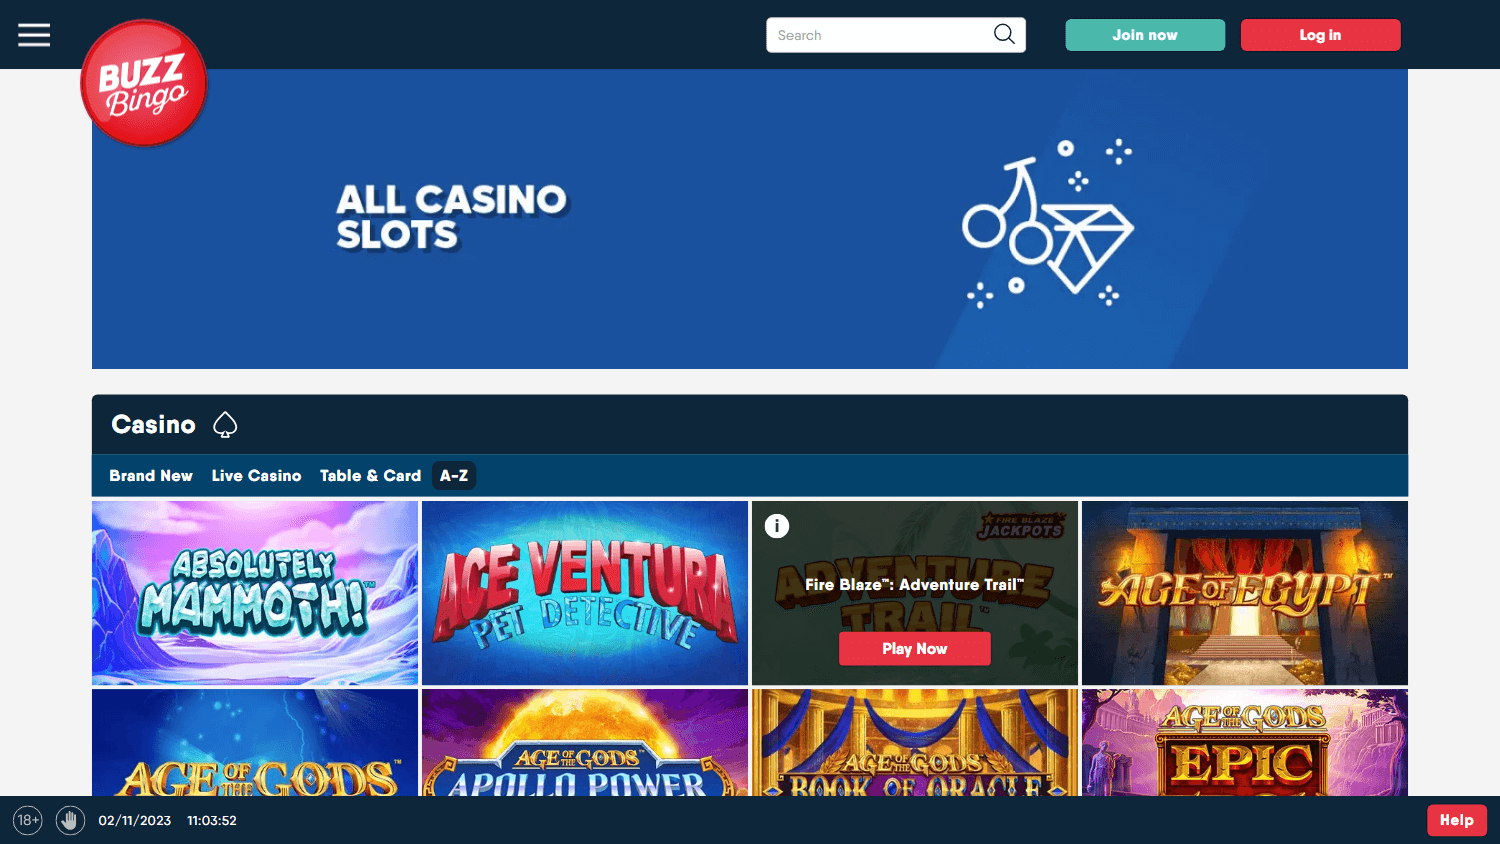 Buzz Bingo Casino Review | Honest Review by Casino Guru